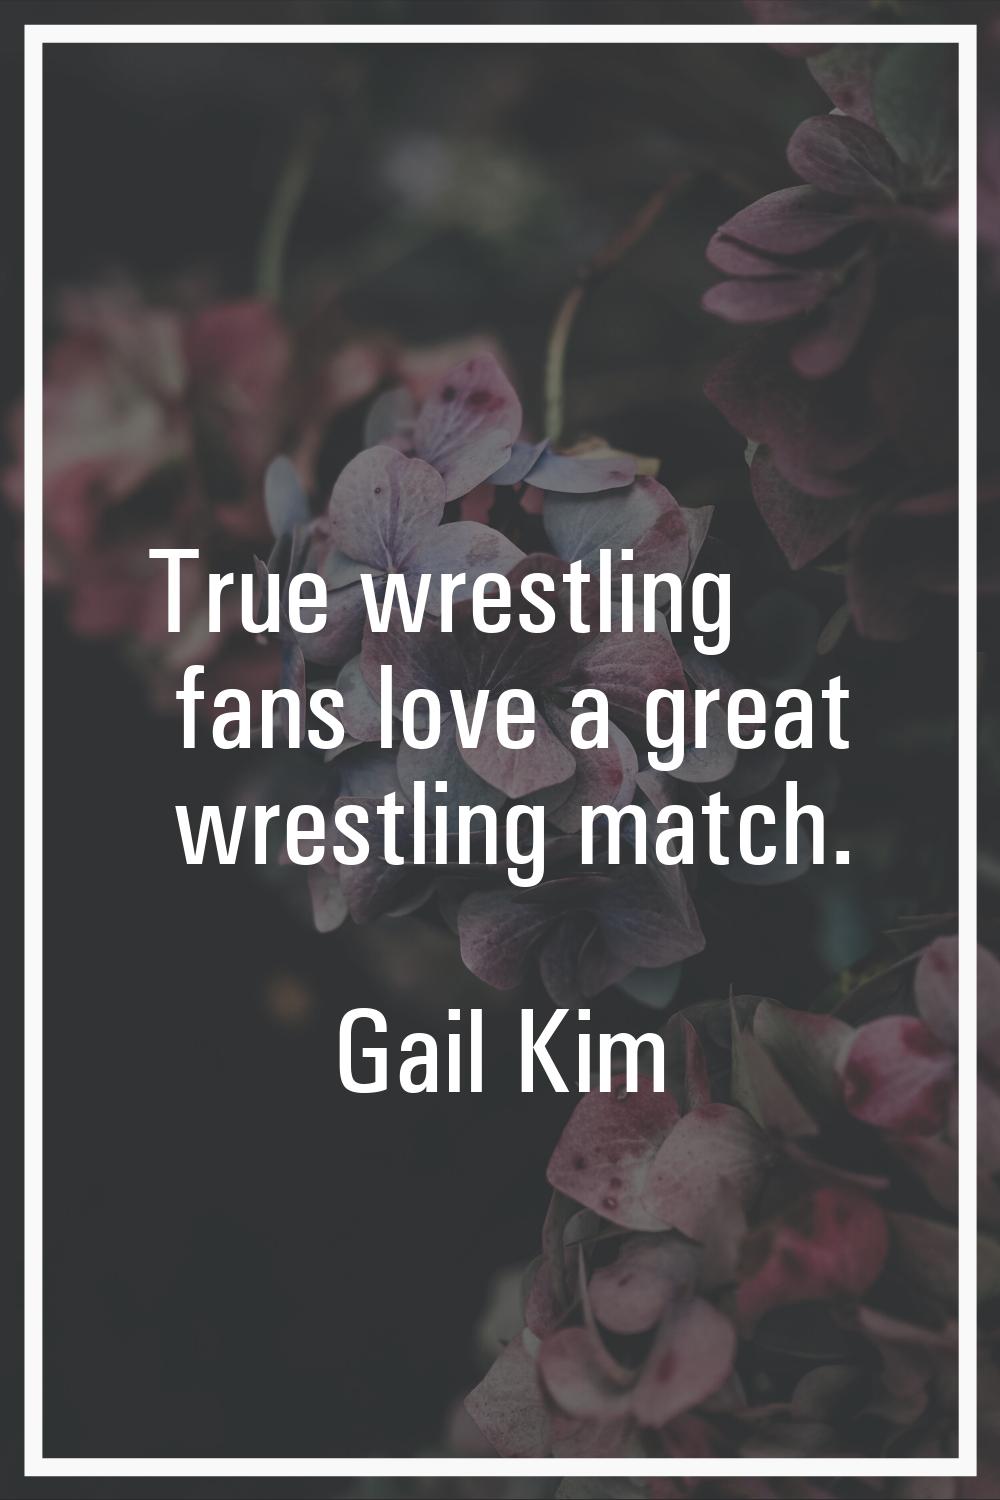 True wrestling fans love a great wrestling match.